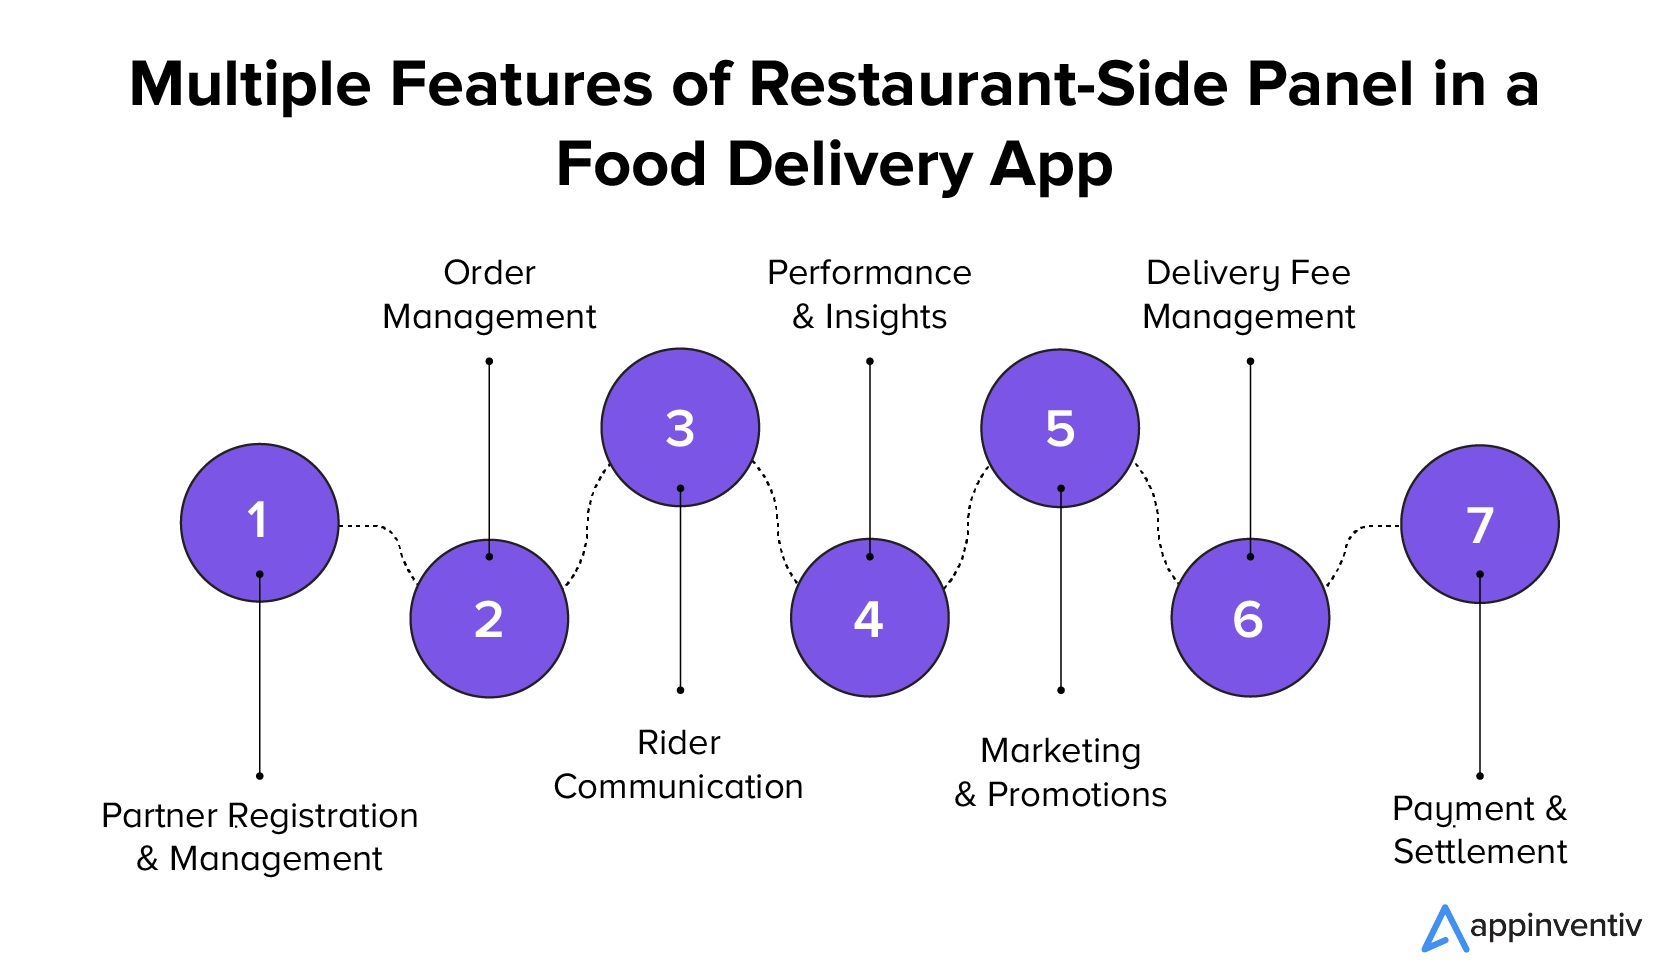 음식 배달 앱의 고객 패널의 다양한 기능